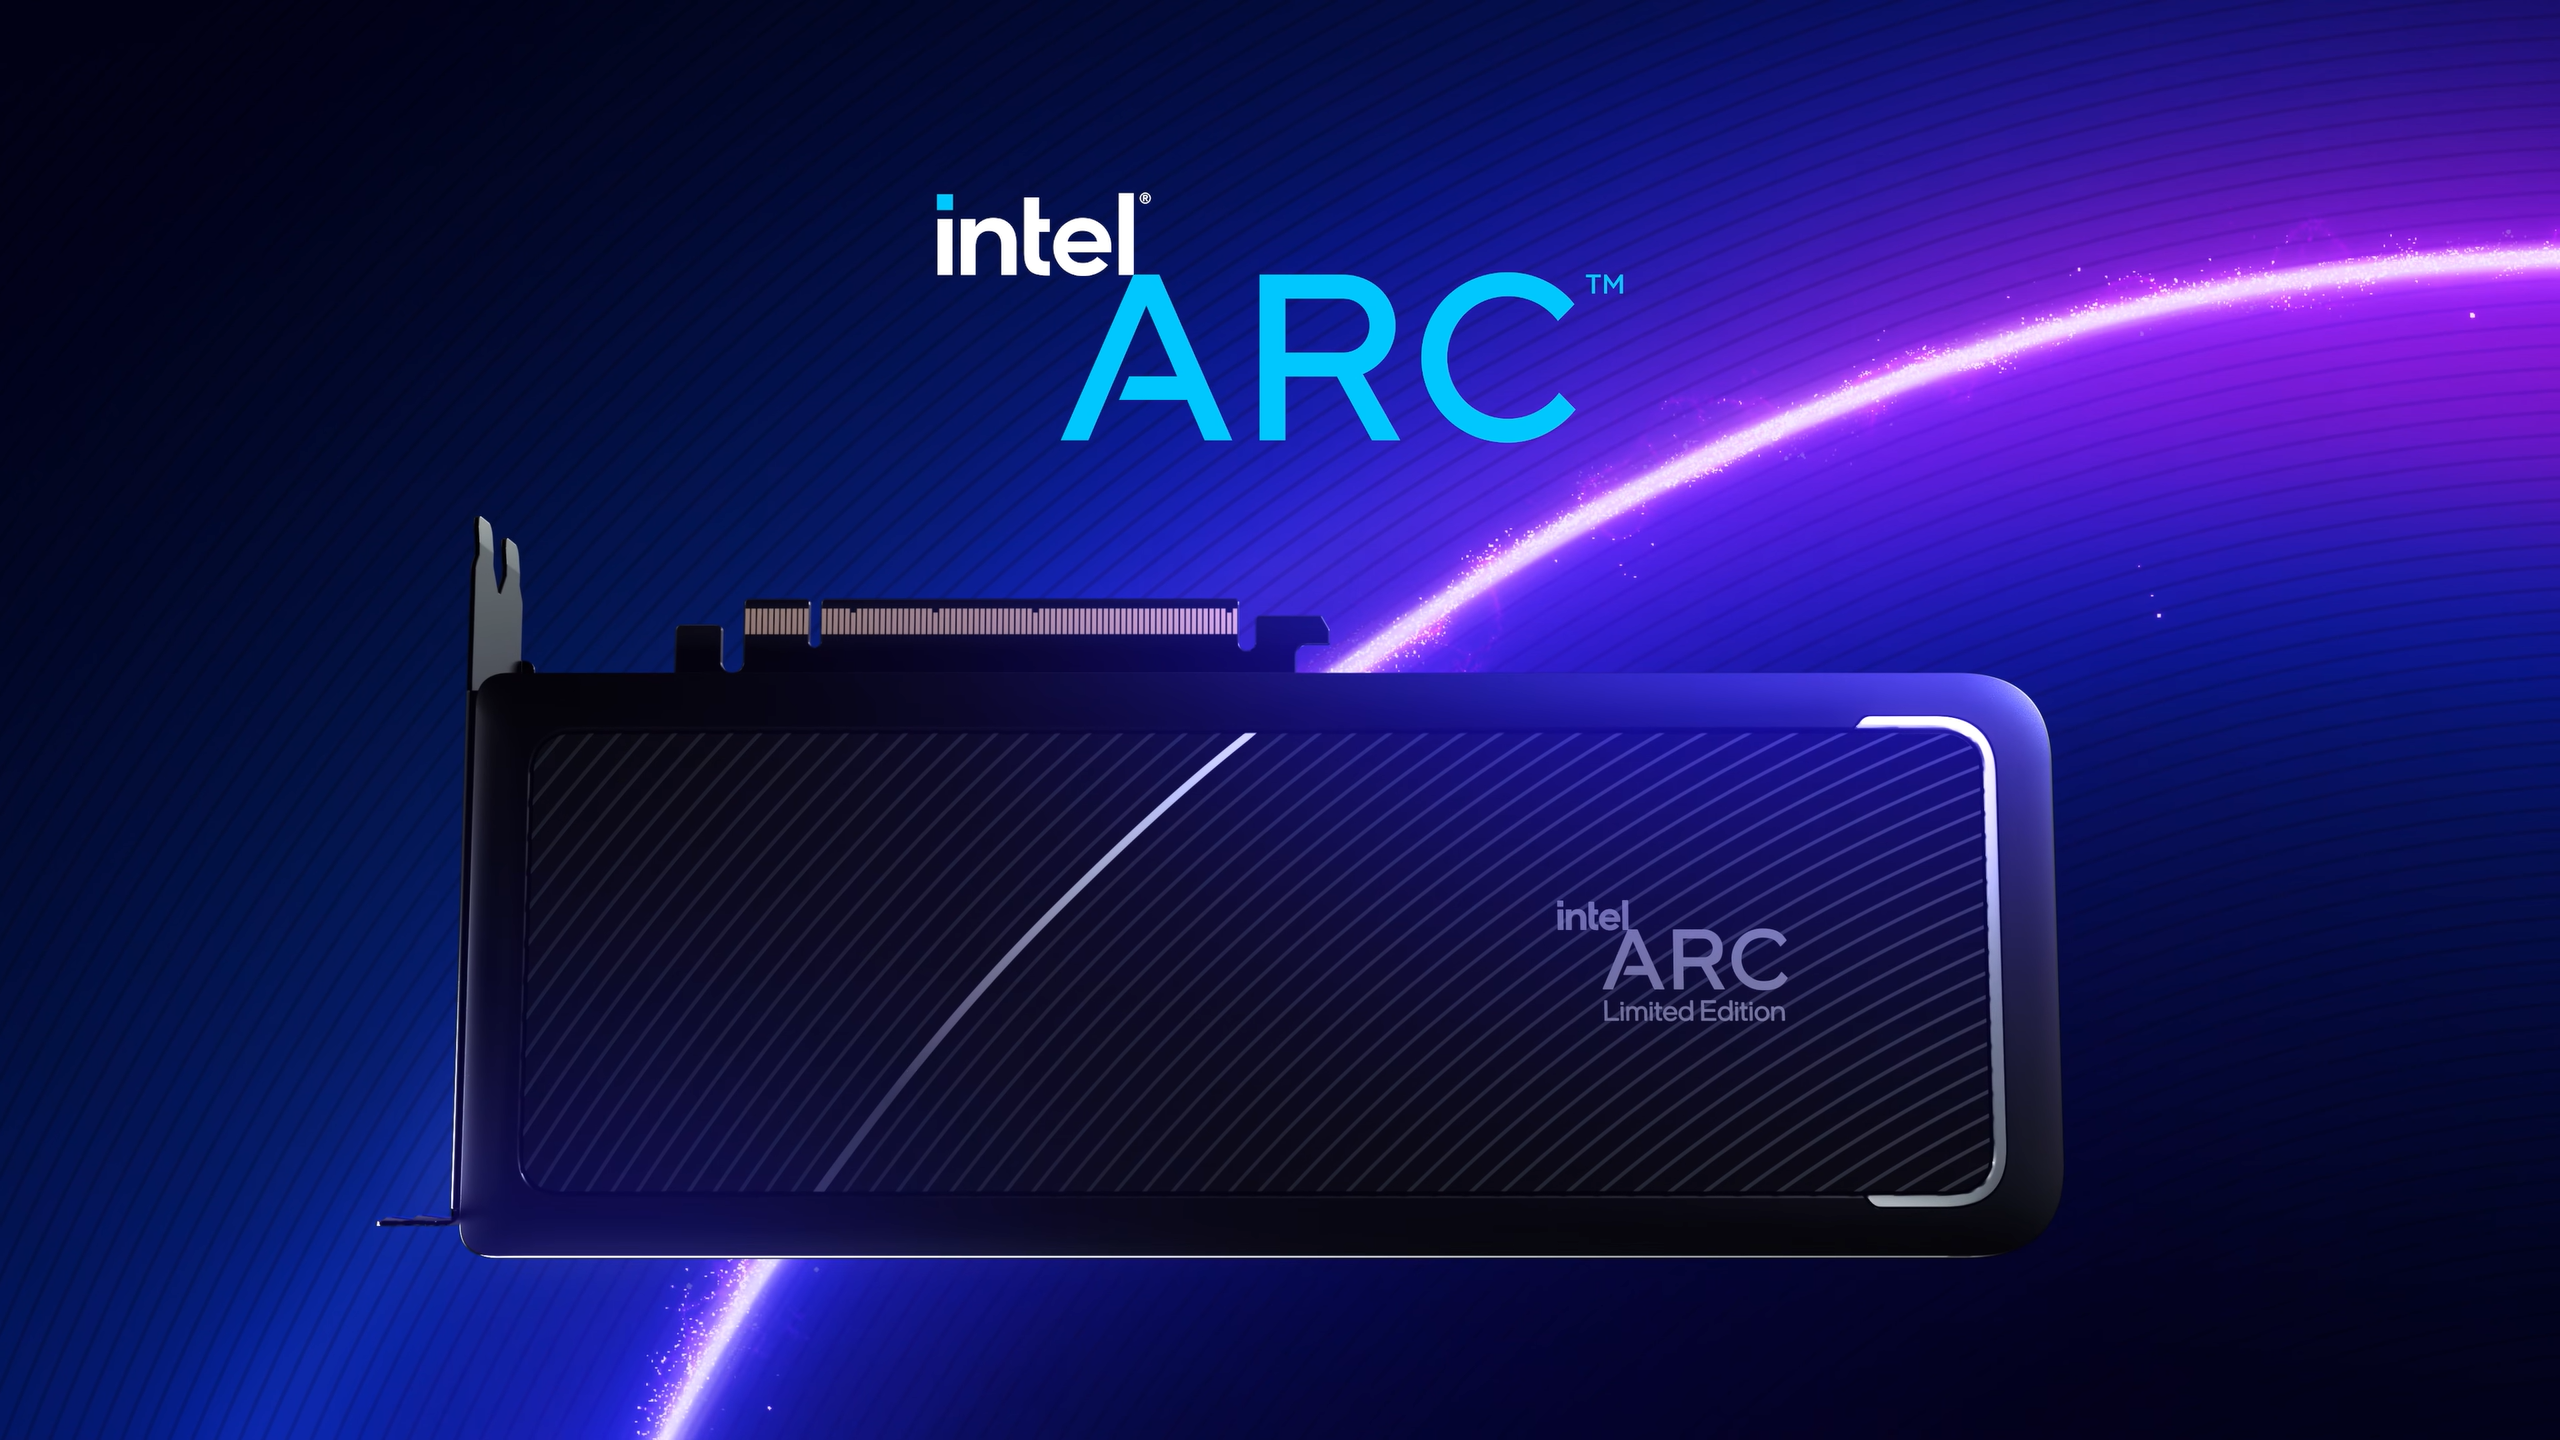 Intel arc tm. Intel Arc a770. Intel Arc a780. Видеокарта Intel Arc a770. Intel Arc a770 Limited Edition.